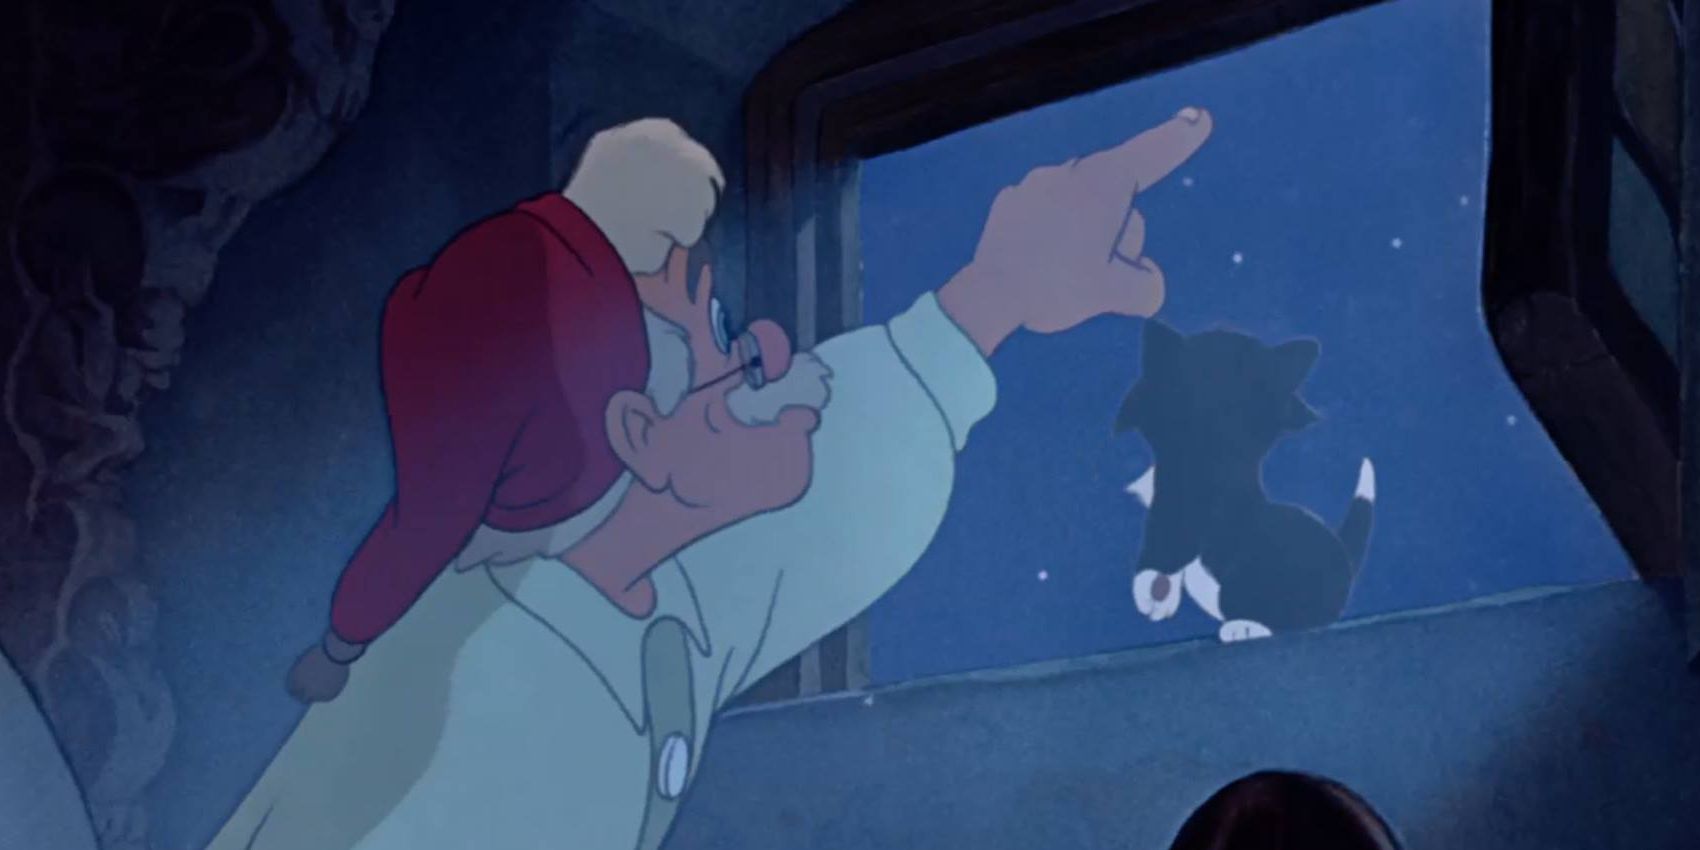 Gappetto ((Christian Rub) making a wish in 'Pinocchio'